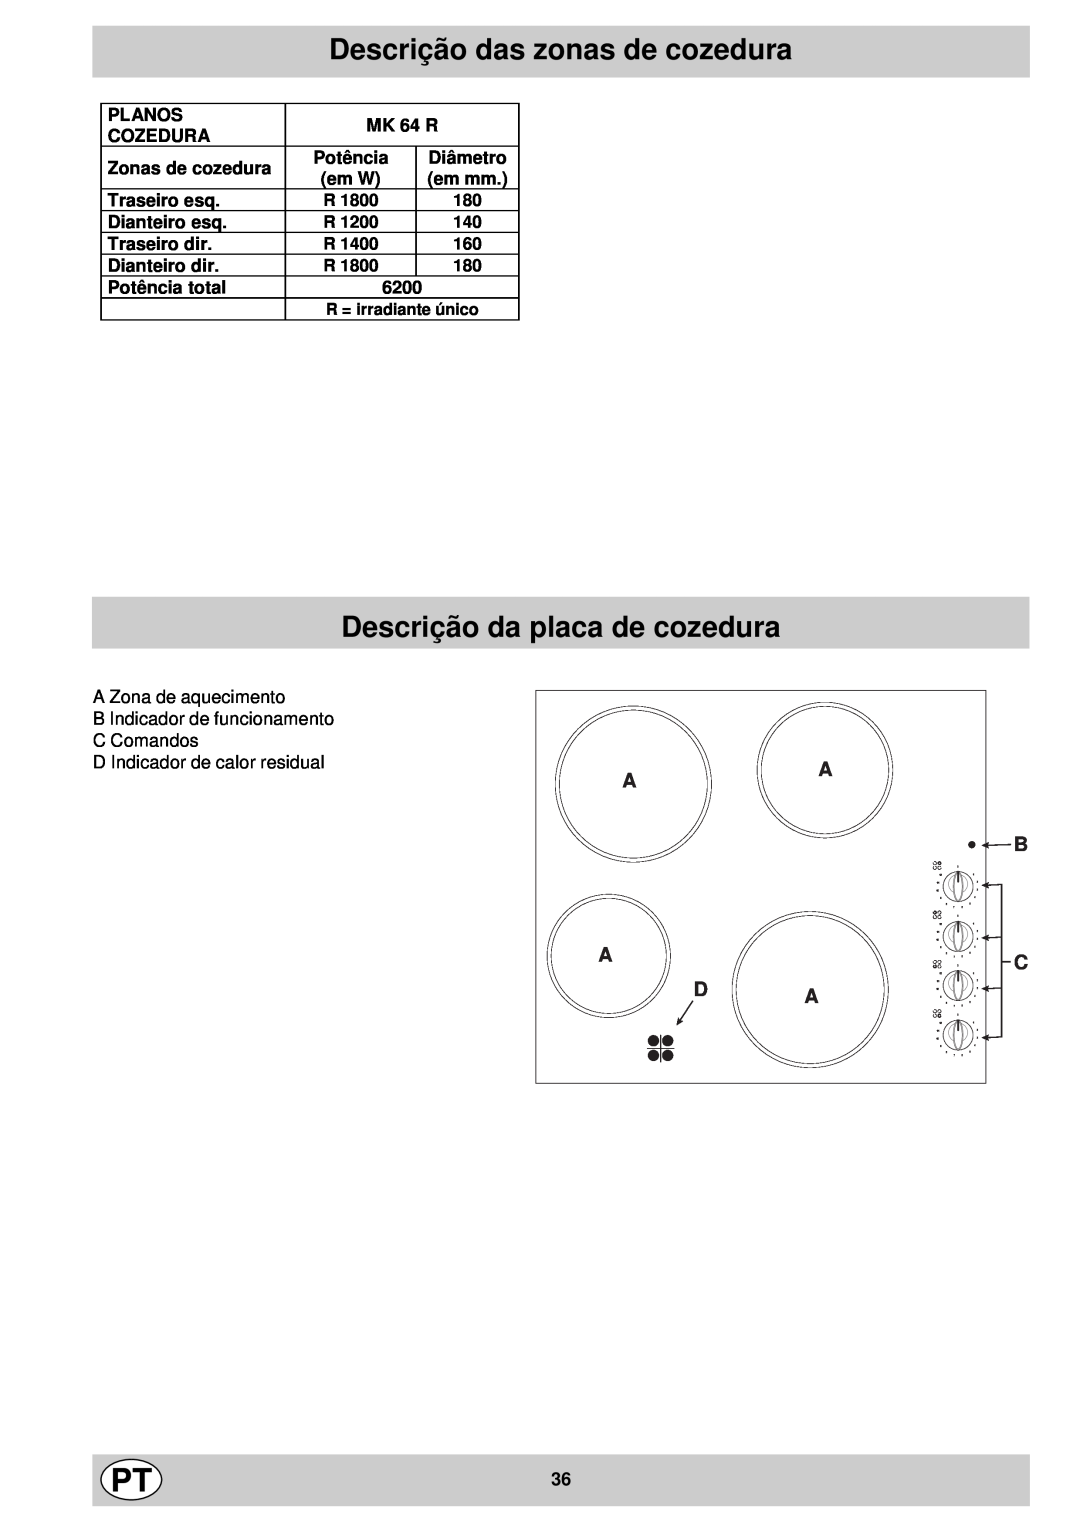 Indesit mk 64 r manual Descrição das zonas de cozedura, Descrição da placa de cozedura, D Indicador de calor residual 